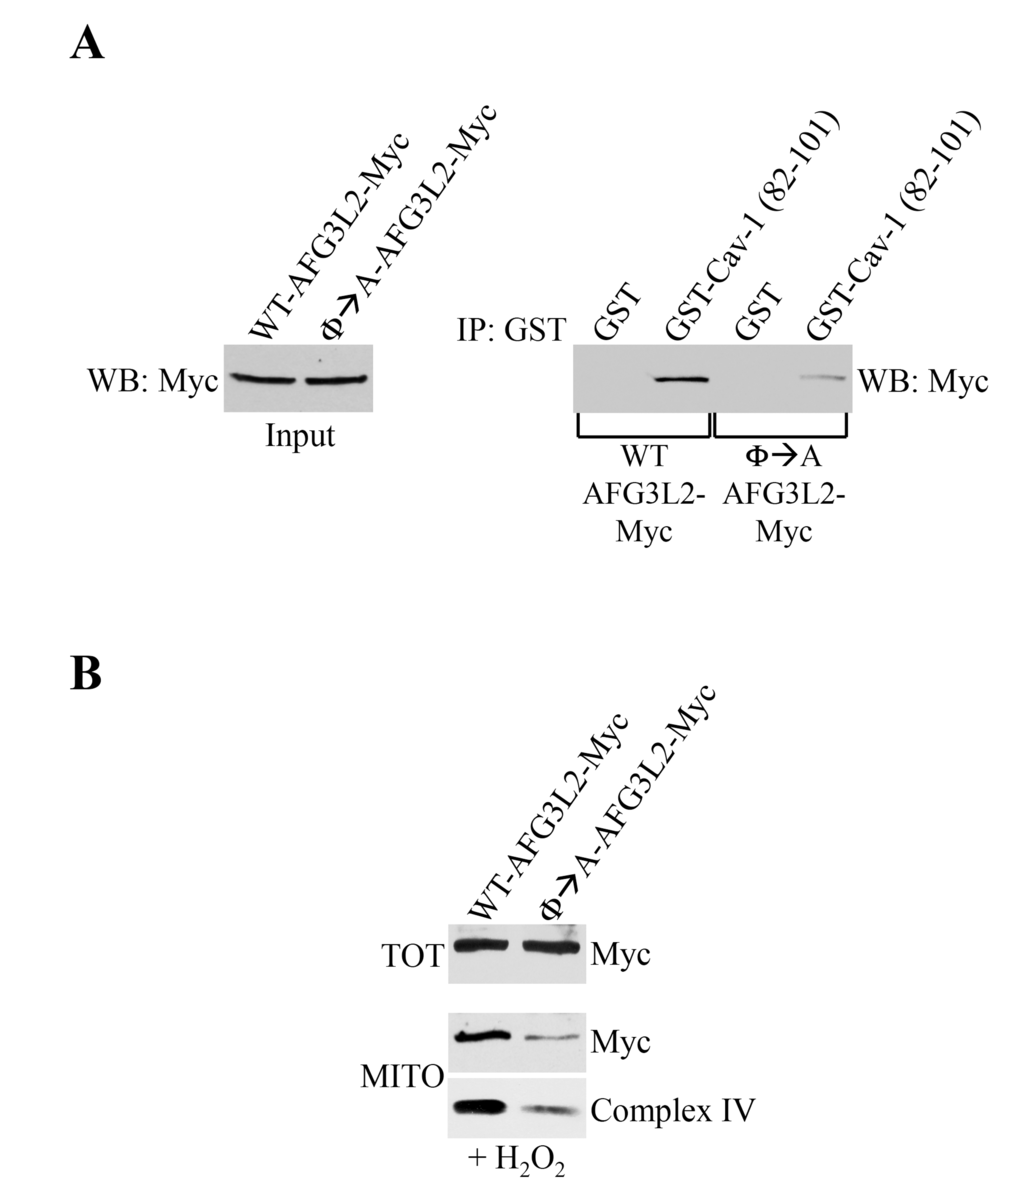 Φ→A-AFG3L2 poorly interacts with caveolin-1, does not accumulate in mitochondria and promotes degradation of complex IV after oxidative stress. (A) GST-Cav-1(82-101) was used in pull down assays with cell lysates from NIH 3T3 cells transiently transfected with either wild type AFG3L2-myc or Φ→A-AFG3L2-myc. Pull-down assays with GST alone was used as internal control. (B) Wild type mouse embryonic fibroblasts (MEFs) were infected with a lentiviral vector (pLVX) expressing either WT-AFG3L2-myc or Φ→A-AFG3L2-myc. After 48 hours, cells were treated with sublethal doses of hydrogen peroxide (150 μM) for 2 hours. Cells were then recovered in complete medium for 7 days. Mitochondrial fractions (MITO) were isolated and the expression levels of AFG3L2-myc and complex IV were measured by immunoblotting analysis. Total expression (TOT) of WT-AFG3L2-myc and Φ→A-AFG3L2-myc is shown in the upper panel.